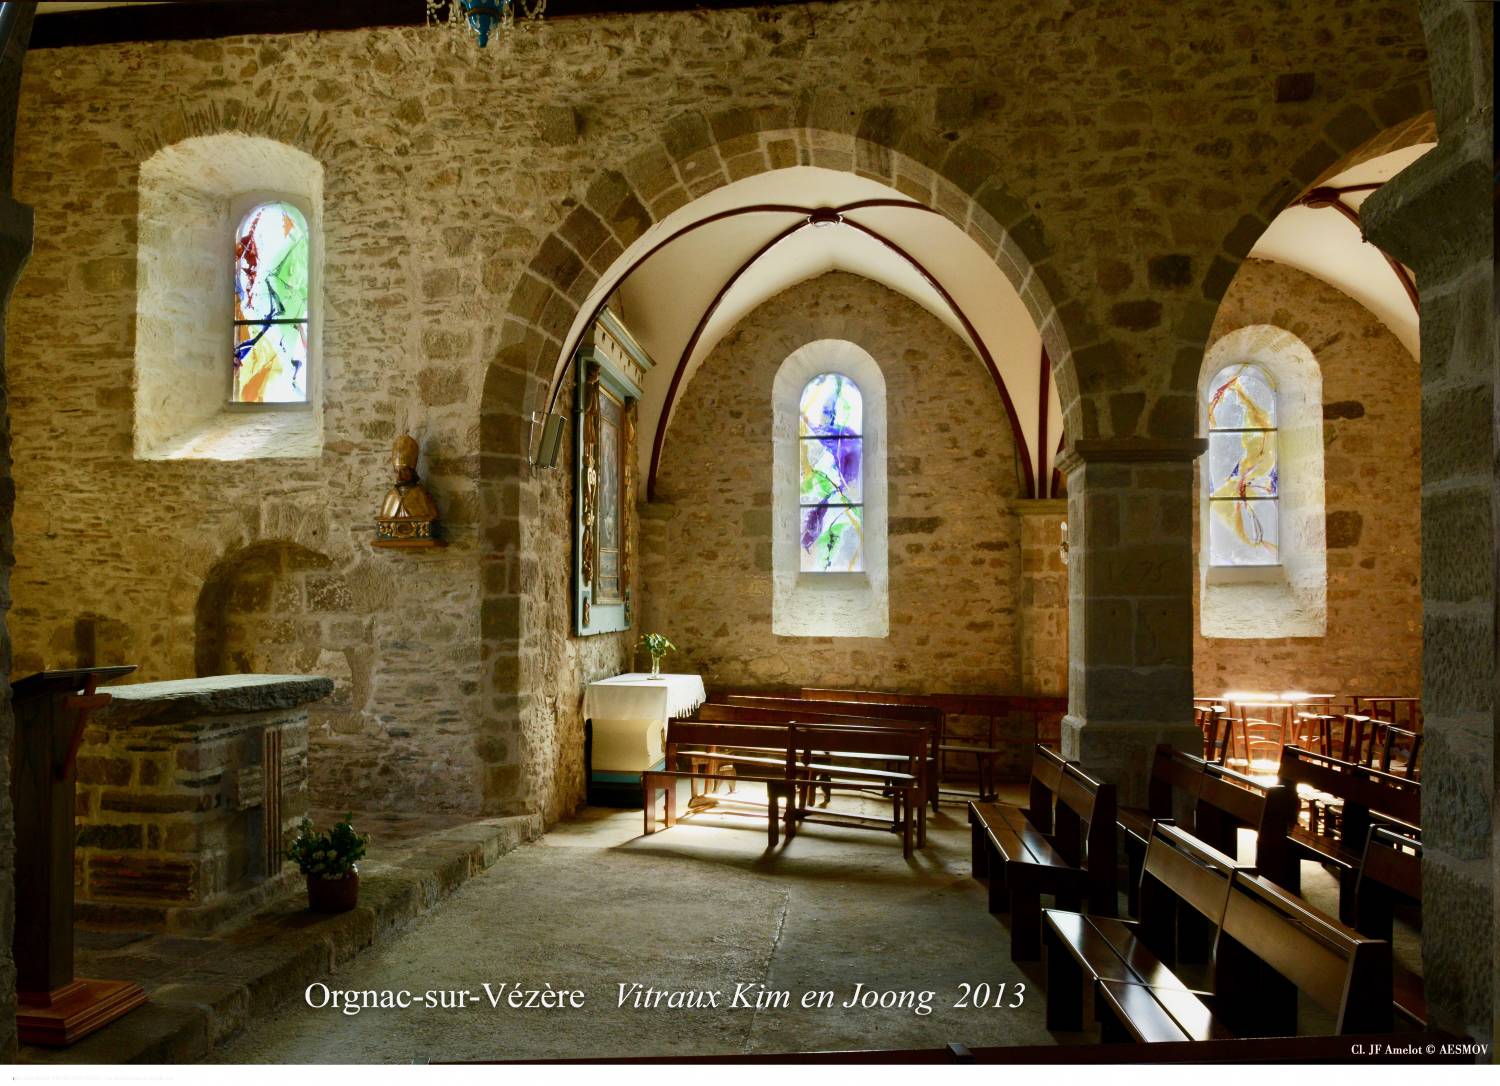 Orgnac-sur-Vezere (19) Eglise Saint-Martial - Sauvegarde de l'Art français